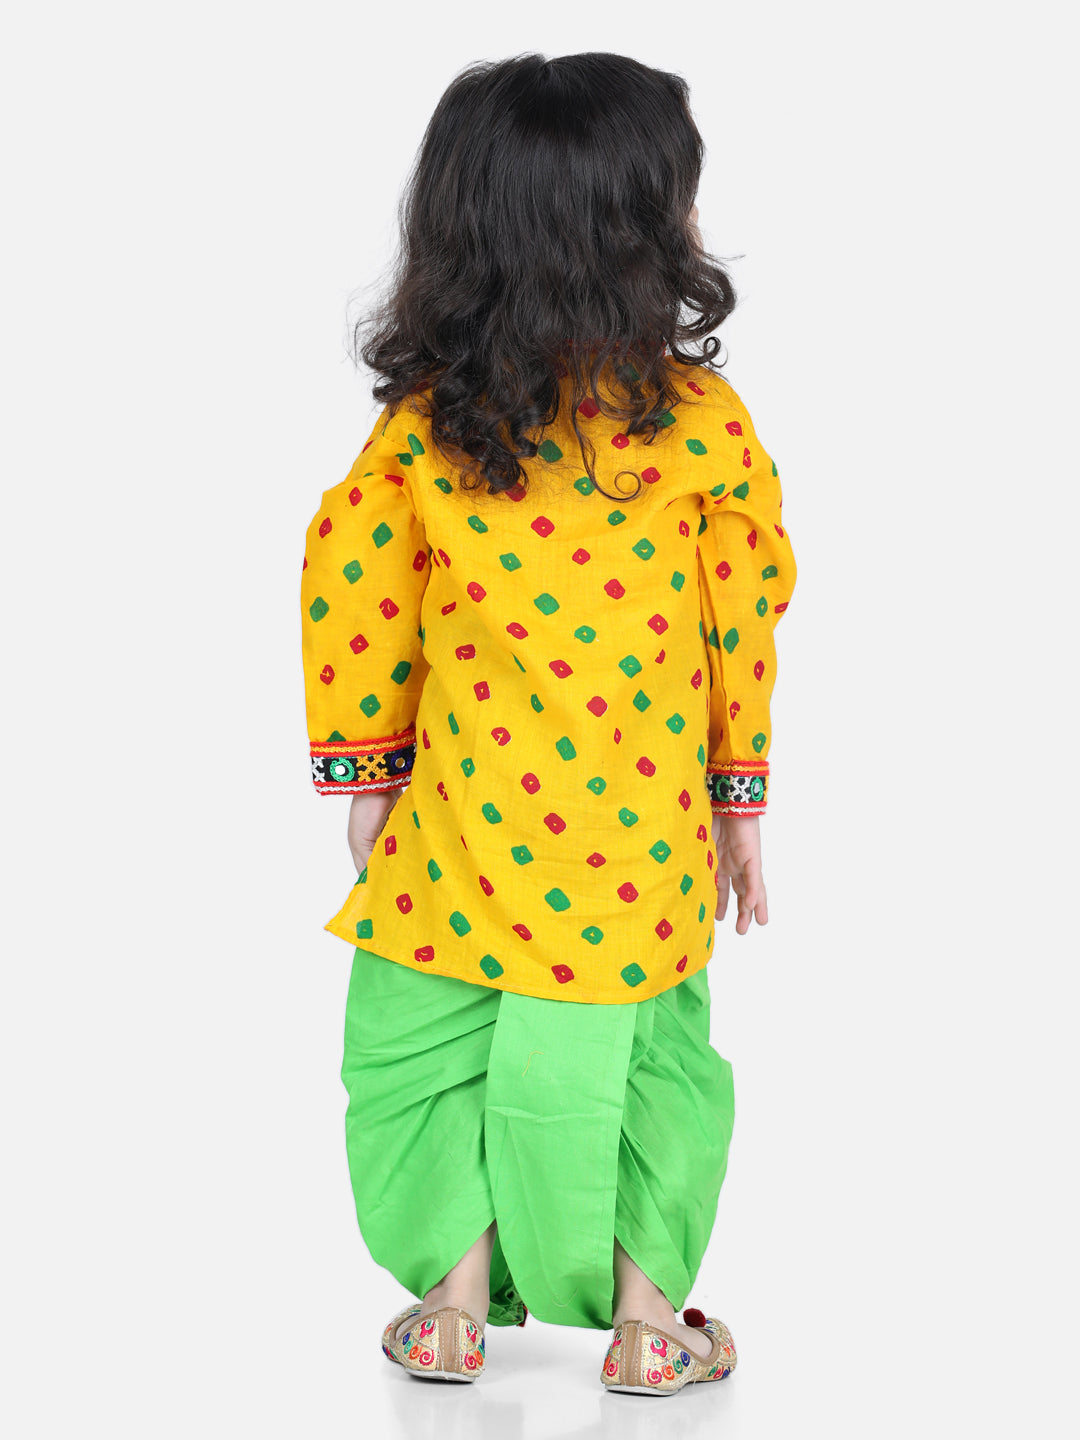 BownBee Bandhani Print Cotton Kanhaiya Suit Dress with Bansuri, Mukut Belt- Yellow